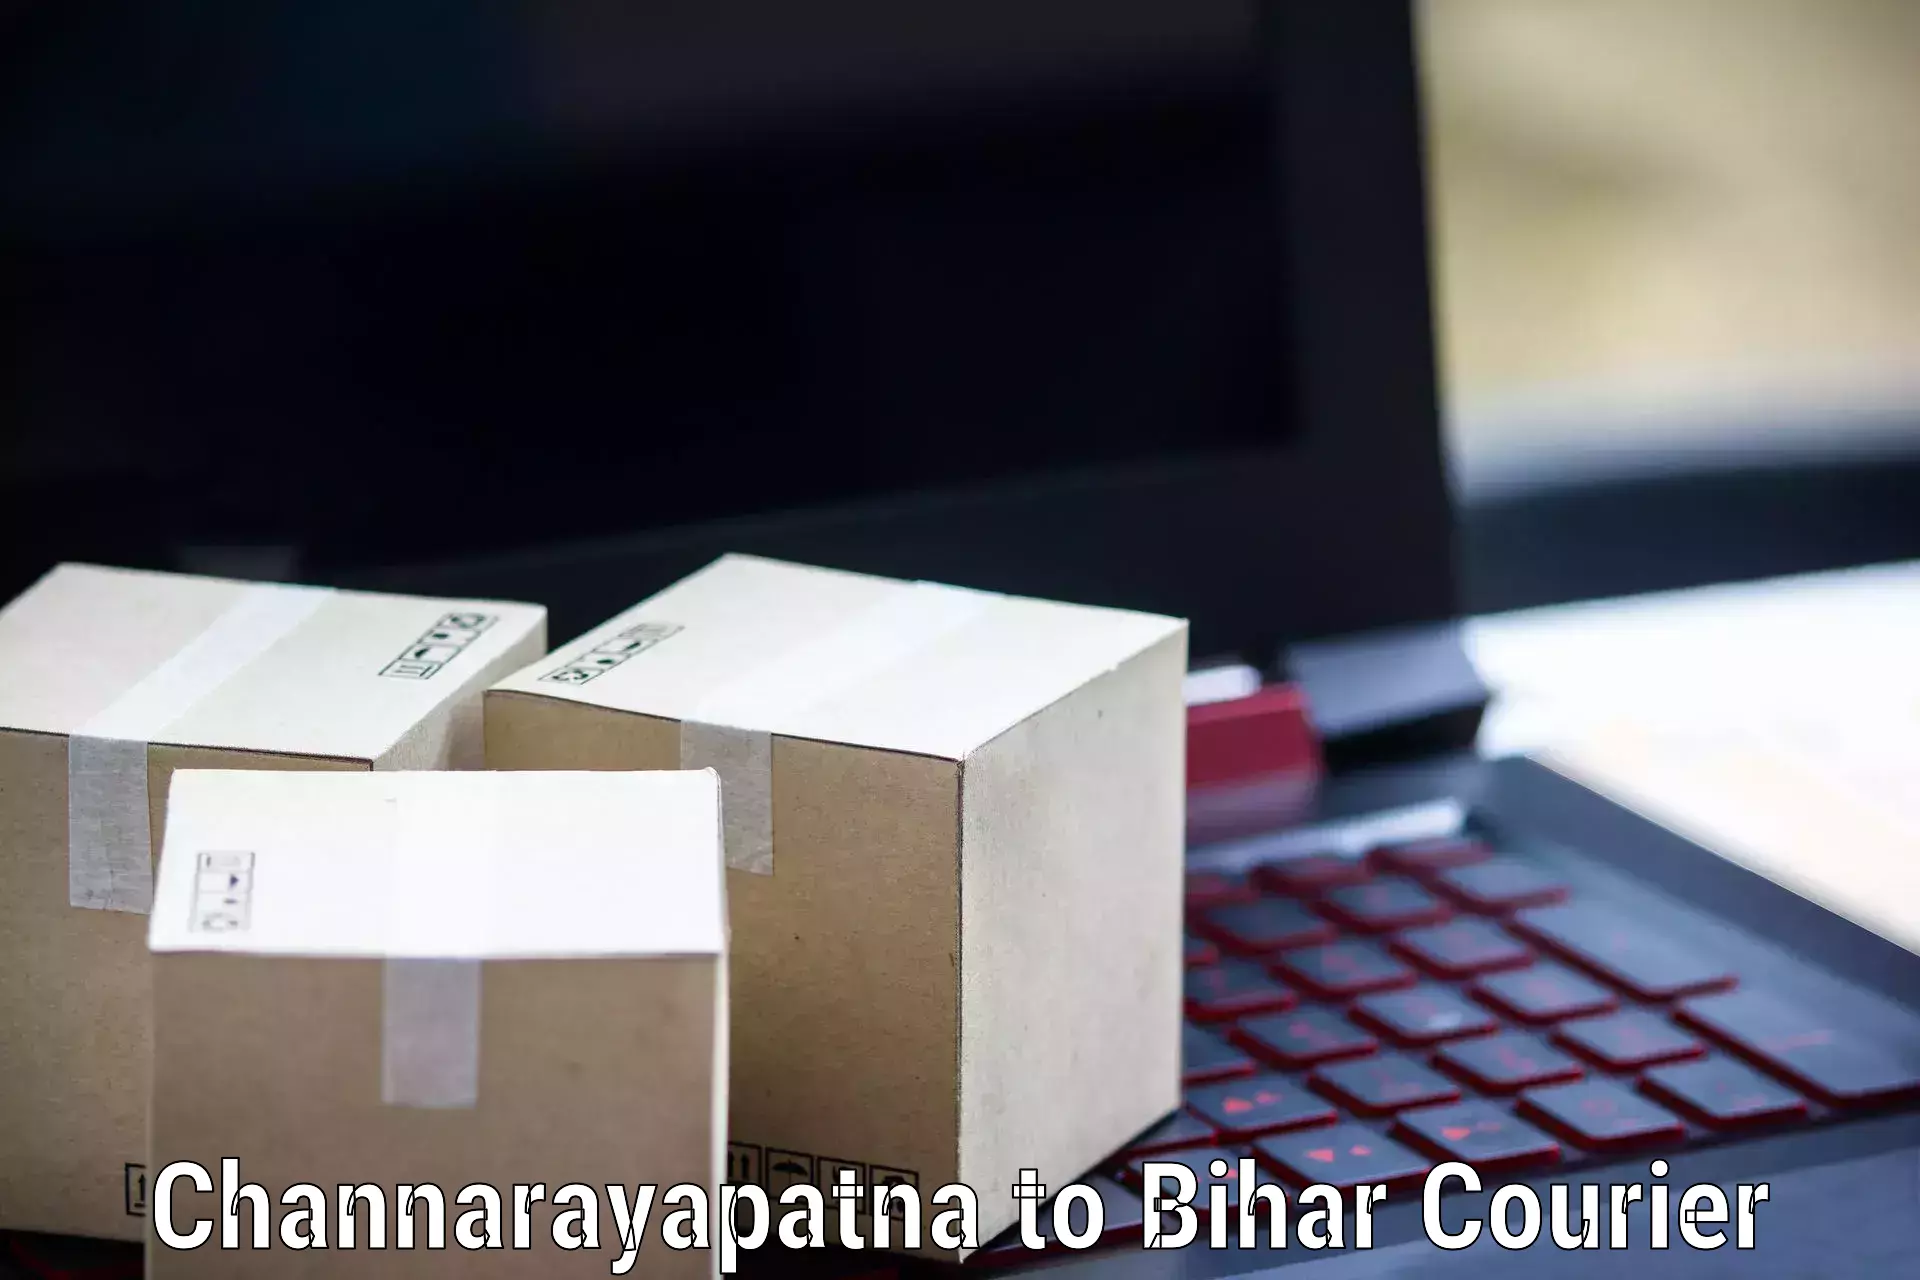 Bulk shipment in Channarayapatna to Bihar